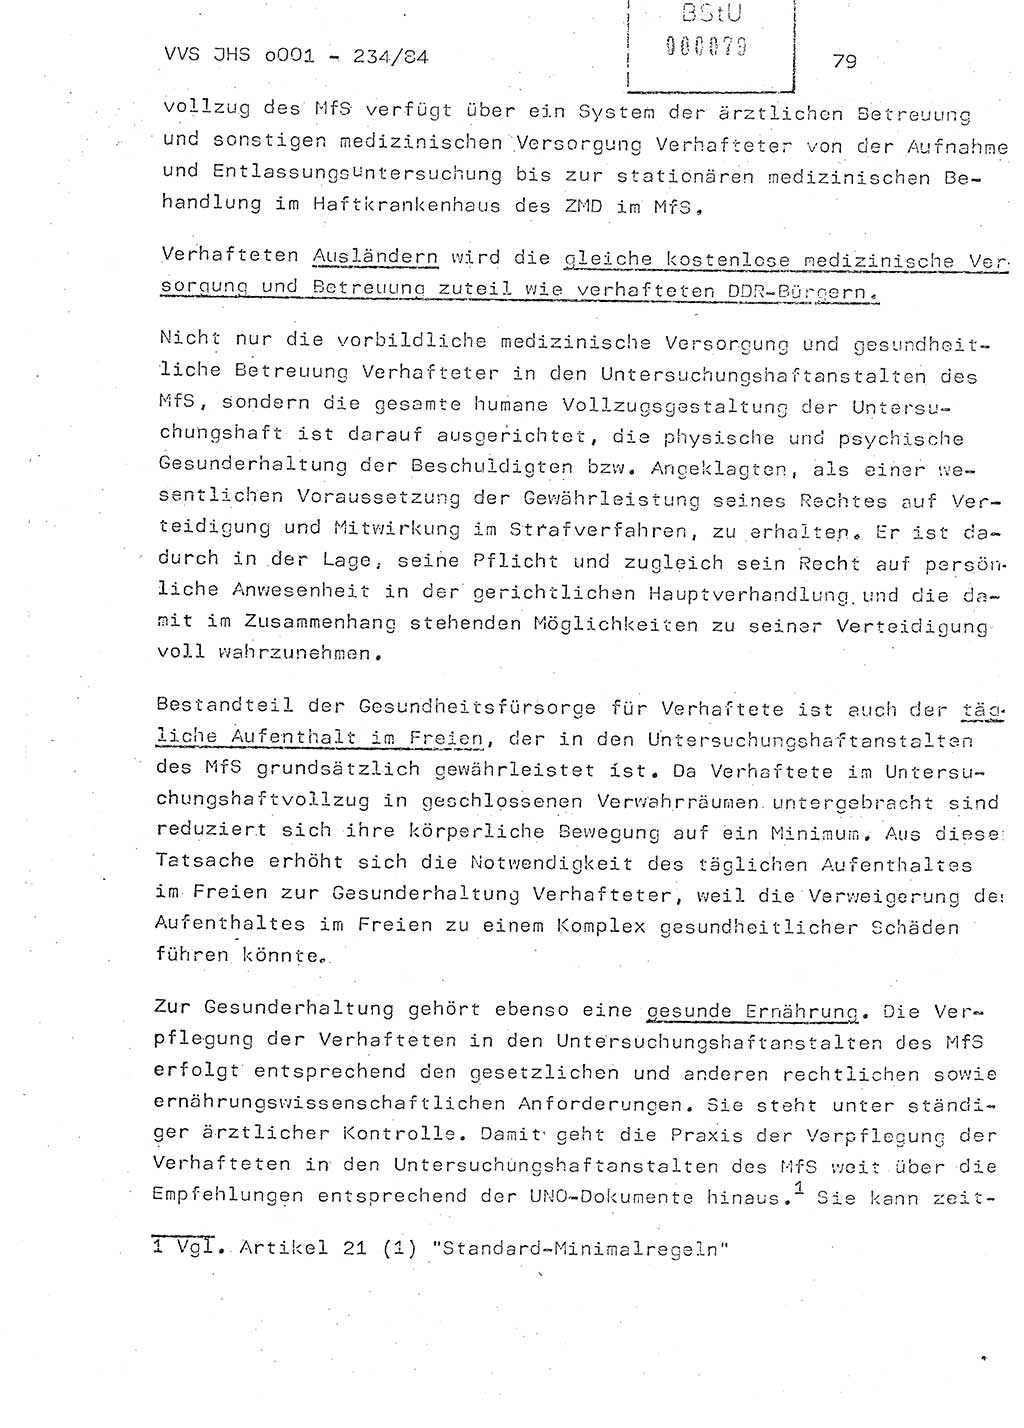 Dissertation Oberst Siegfried Rataizick (Abt. ⅩⅣ), Oberstleutnant Volkmar Heinz (Abt. ⅩⅣ), Oberstleutnant Werner Stein (HA Ⅸ), Hauptmann Heinz Conrad (JHS), Ministerium für Staatssicherheit (MfS) [Deutsche Demokratische Republik (DDR)], Juristische Hochschule (JHS), Vertrauliche Verschlußsache (VVS) o001-234/84, Potsdam 1984, Seite 79 (Diss. MfS DDR JHS VVS o001-234/84 1984, S. 79)